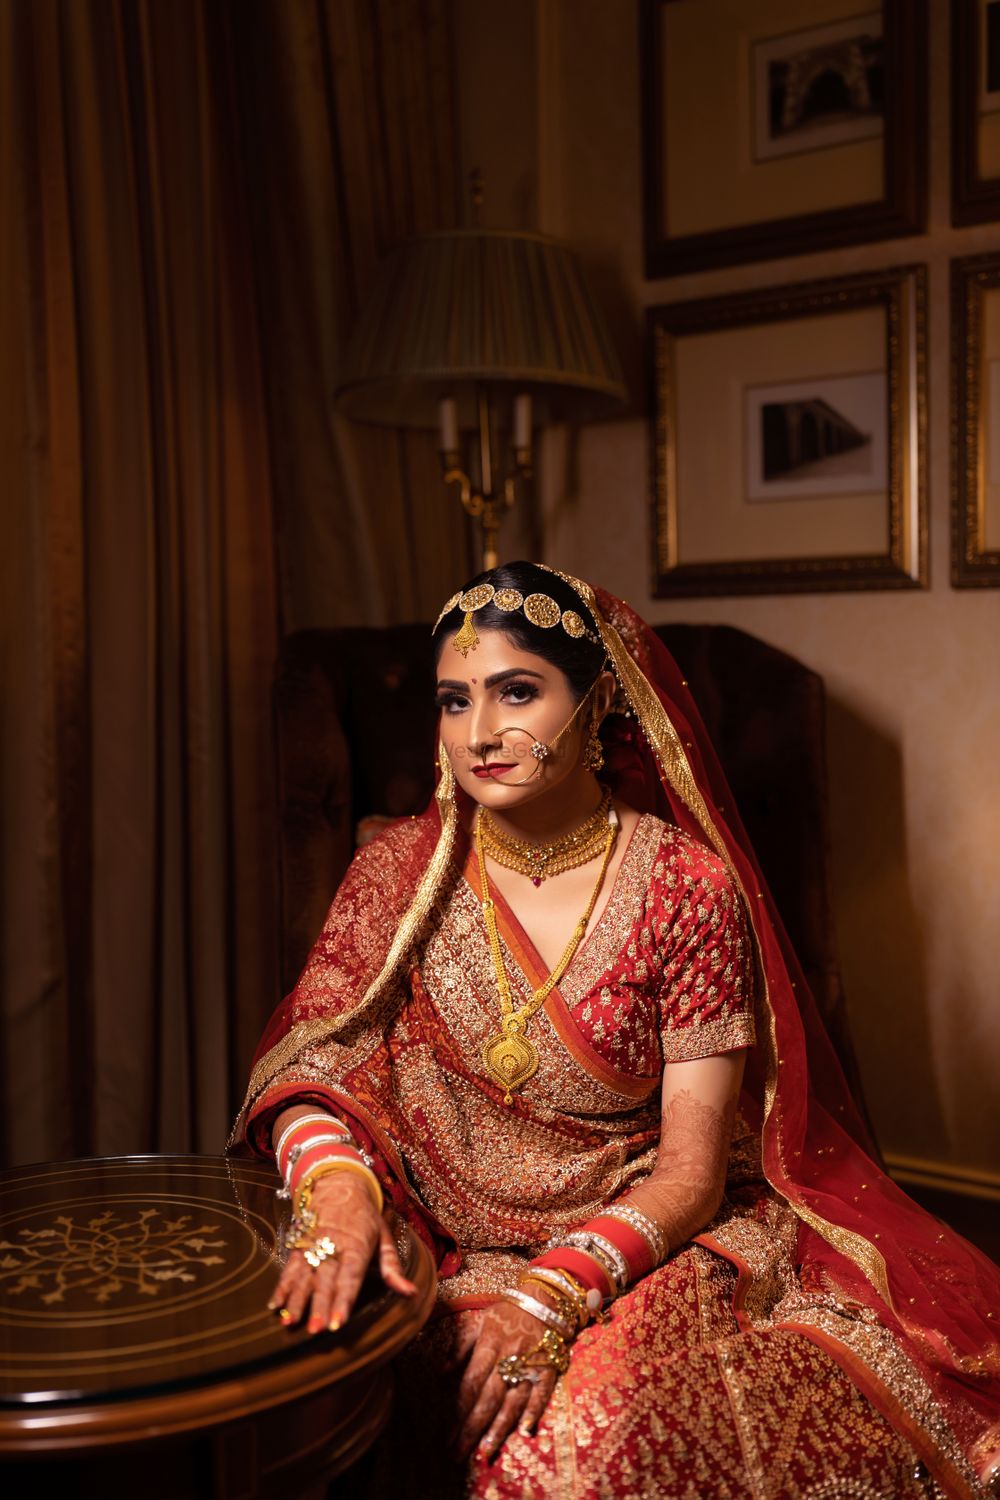 Photo From Agrani bridal - By Shivoli Dogra